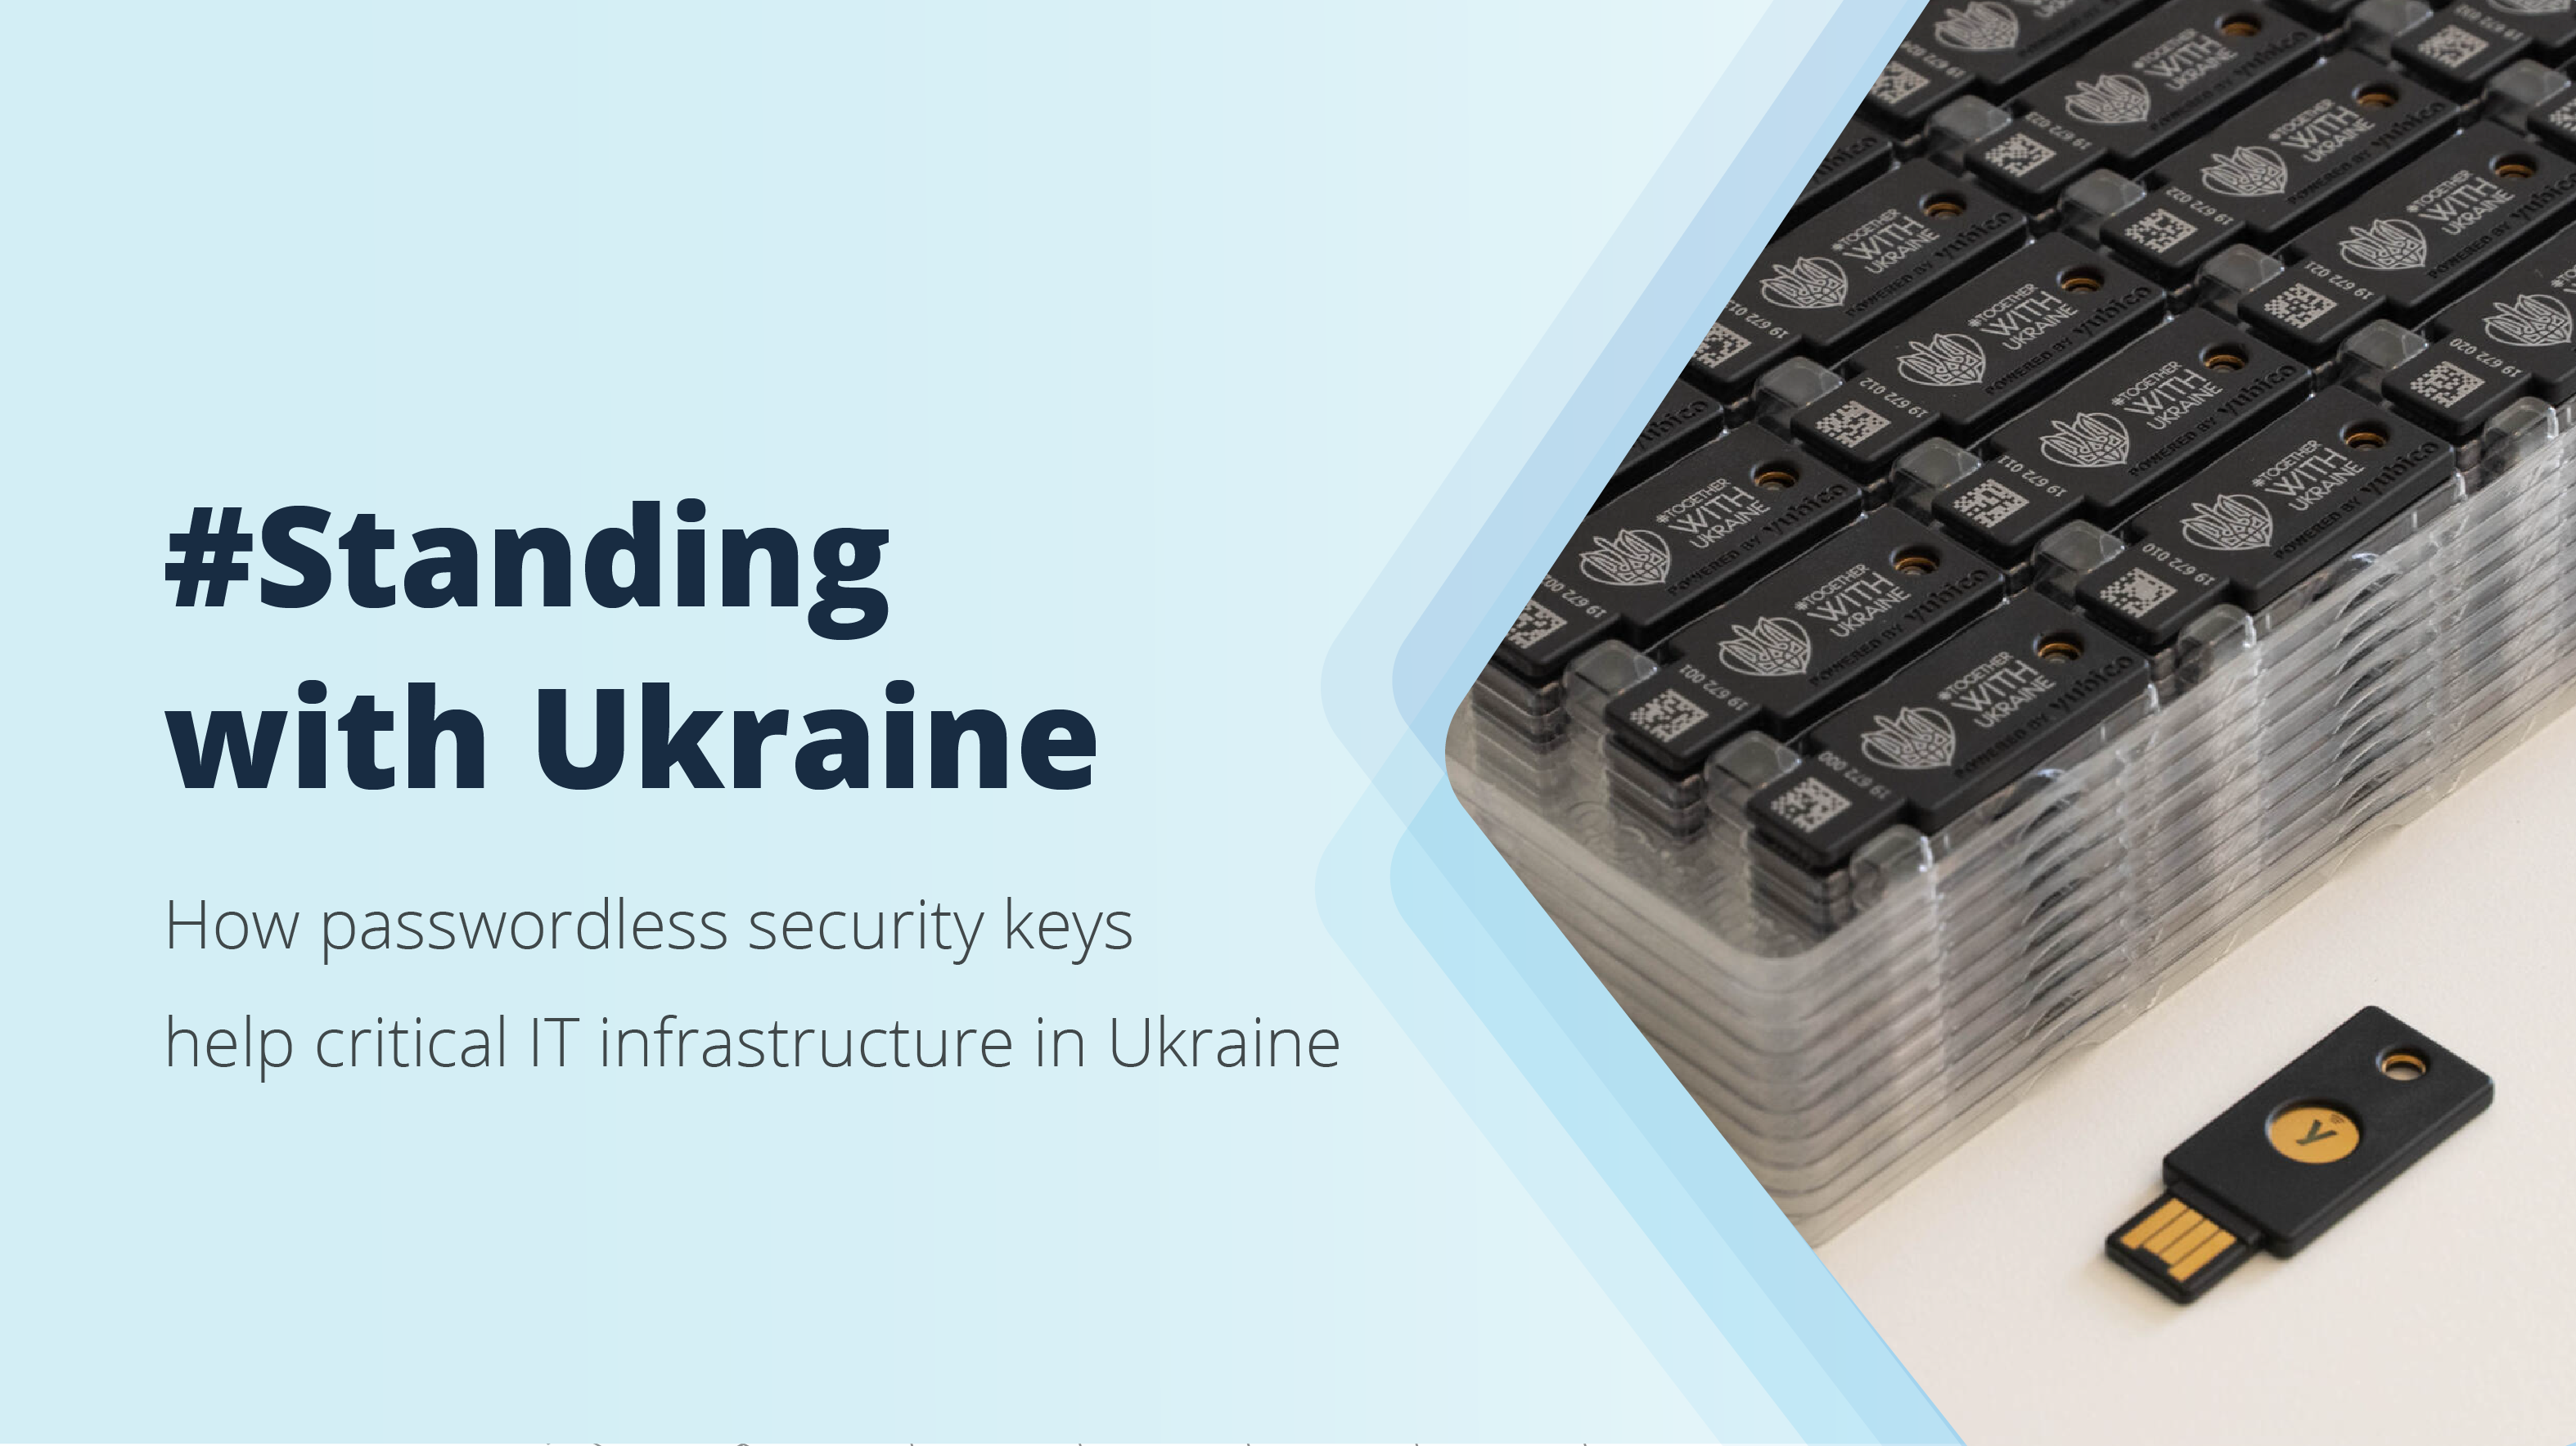 <b> Hideez está ayudando a defender el ciberespacio ucraniano</b>